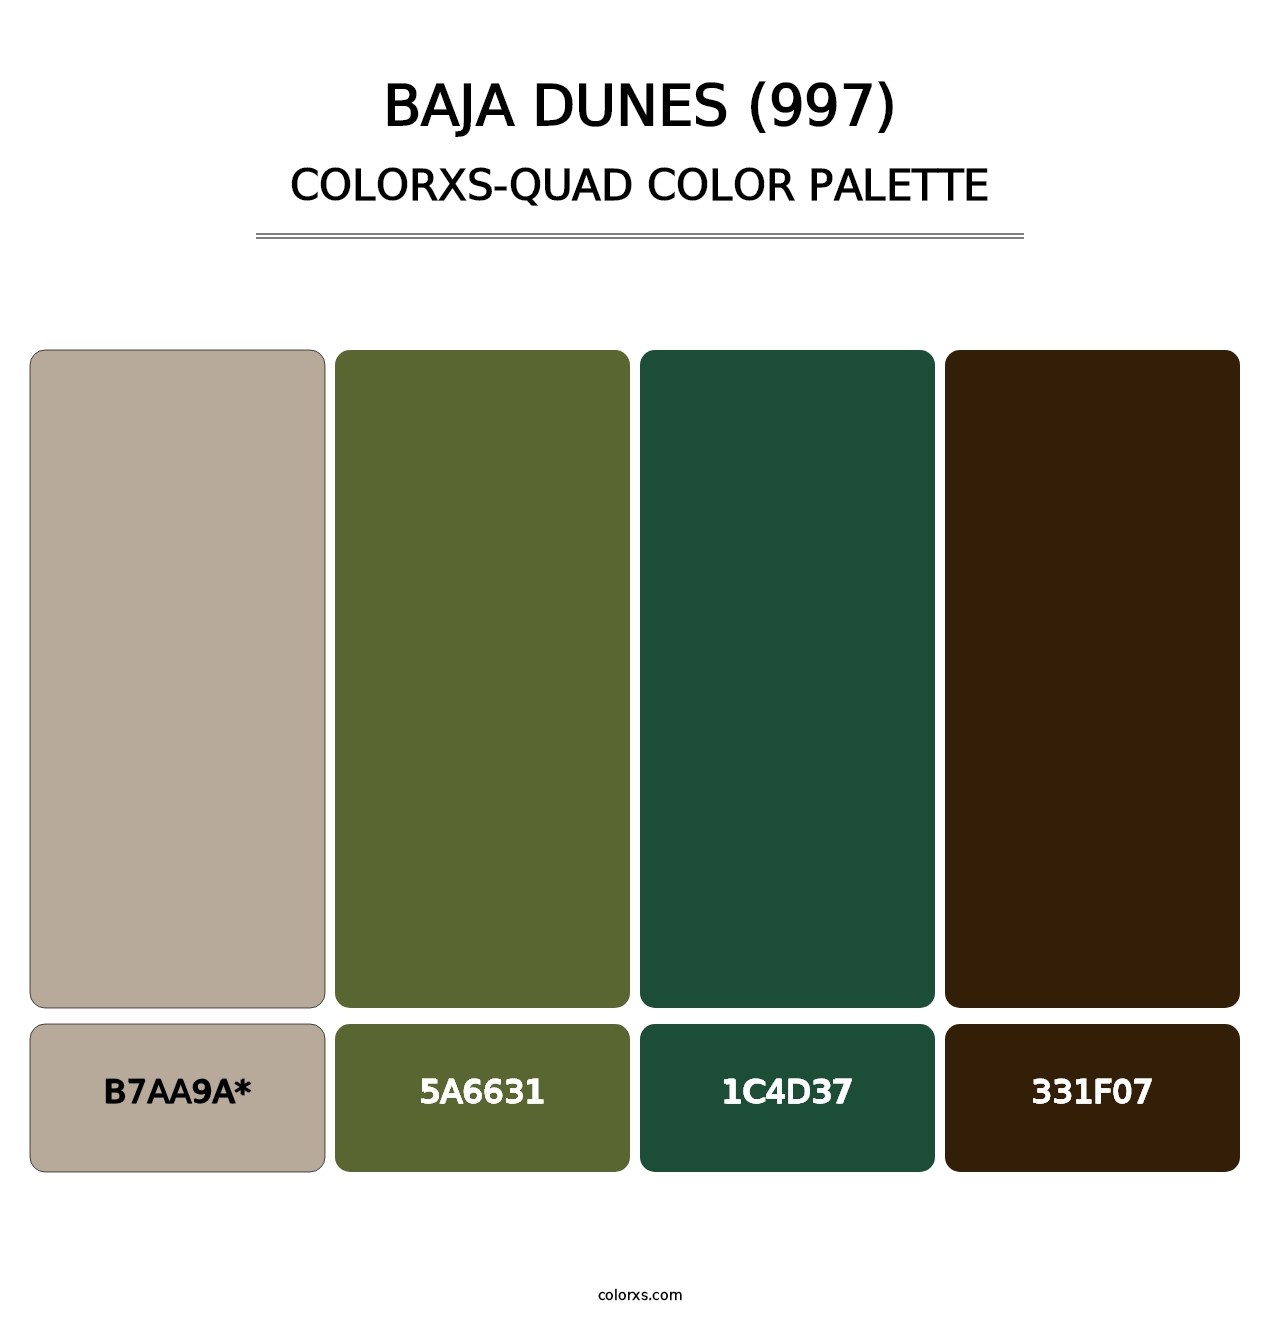 Baja Dunes (997) - Colorxs Quad Palette